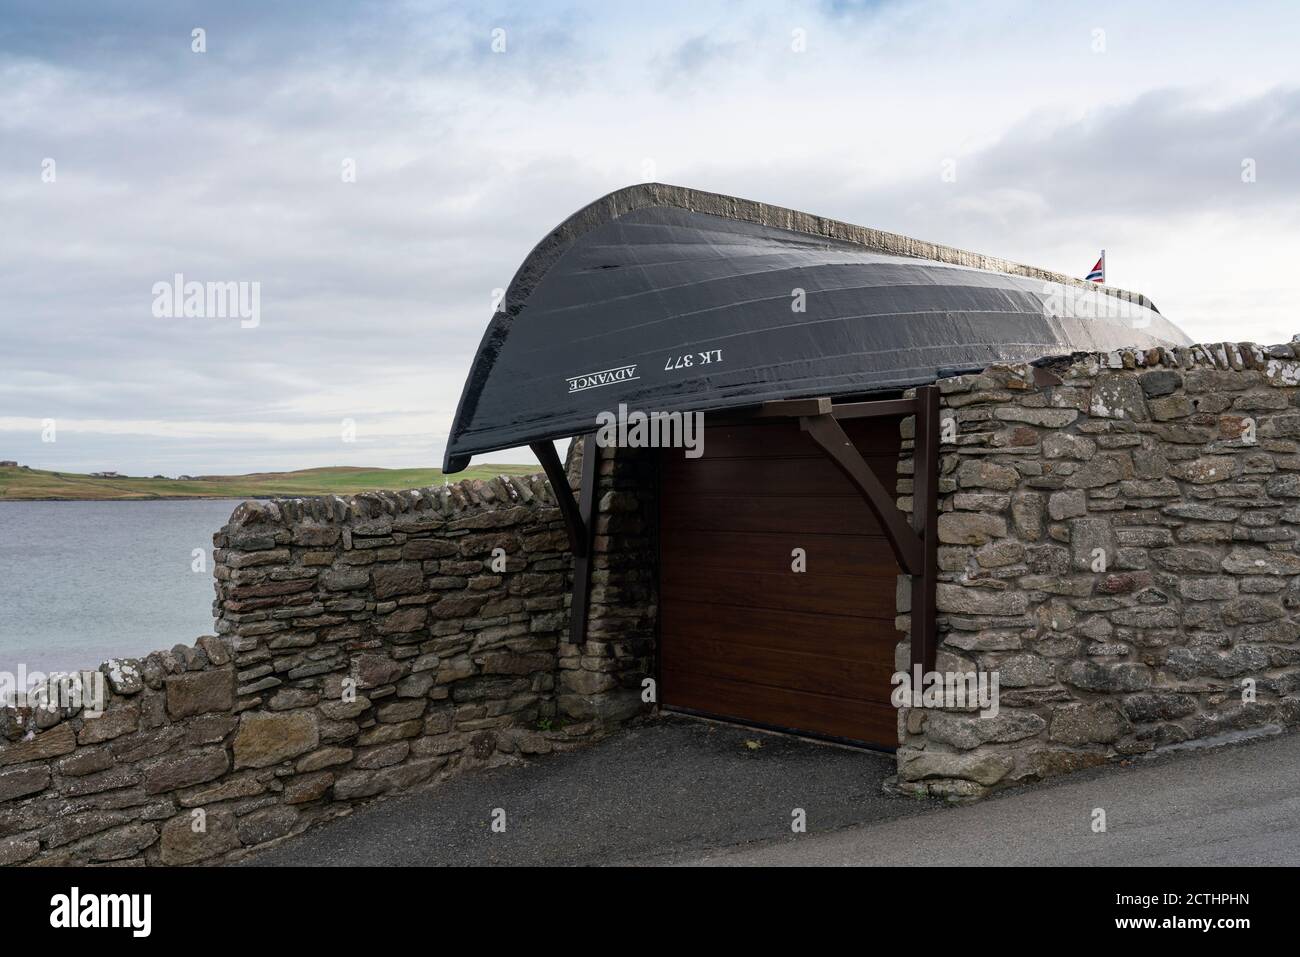 Imbarcazione capovolta che forma il tetto di garage di casa nella città vecchia di Lerwick, Isole Shetland, Scozia, Regno Unito Foto Stock